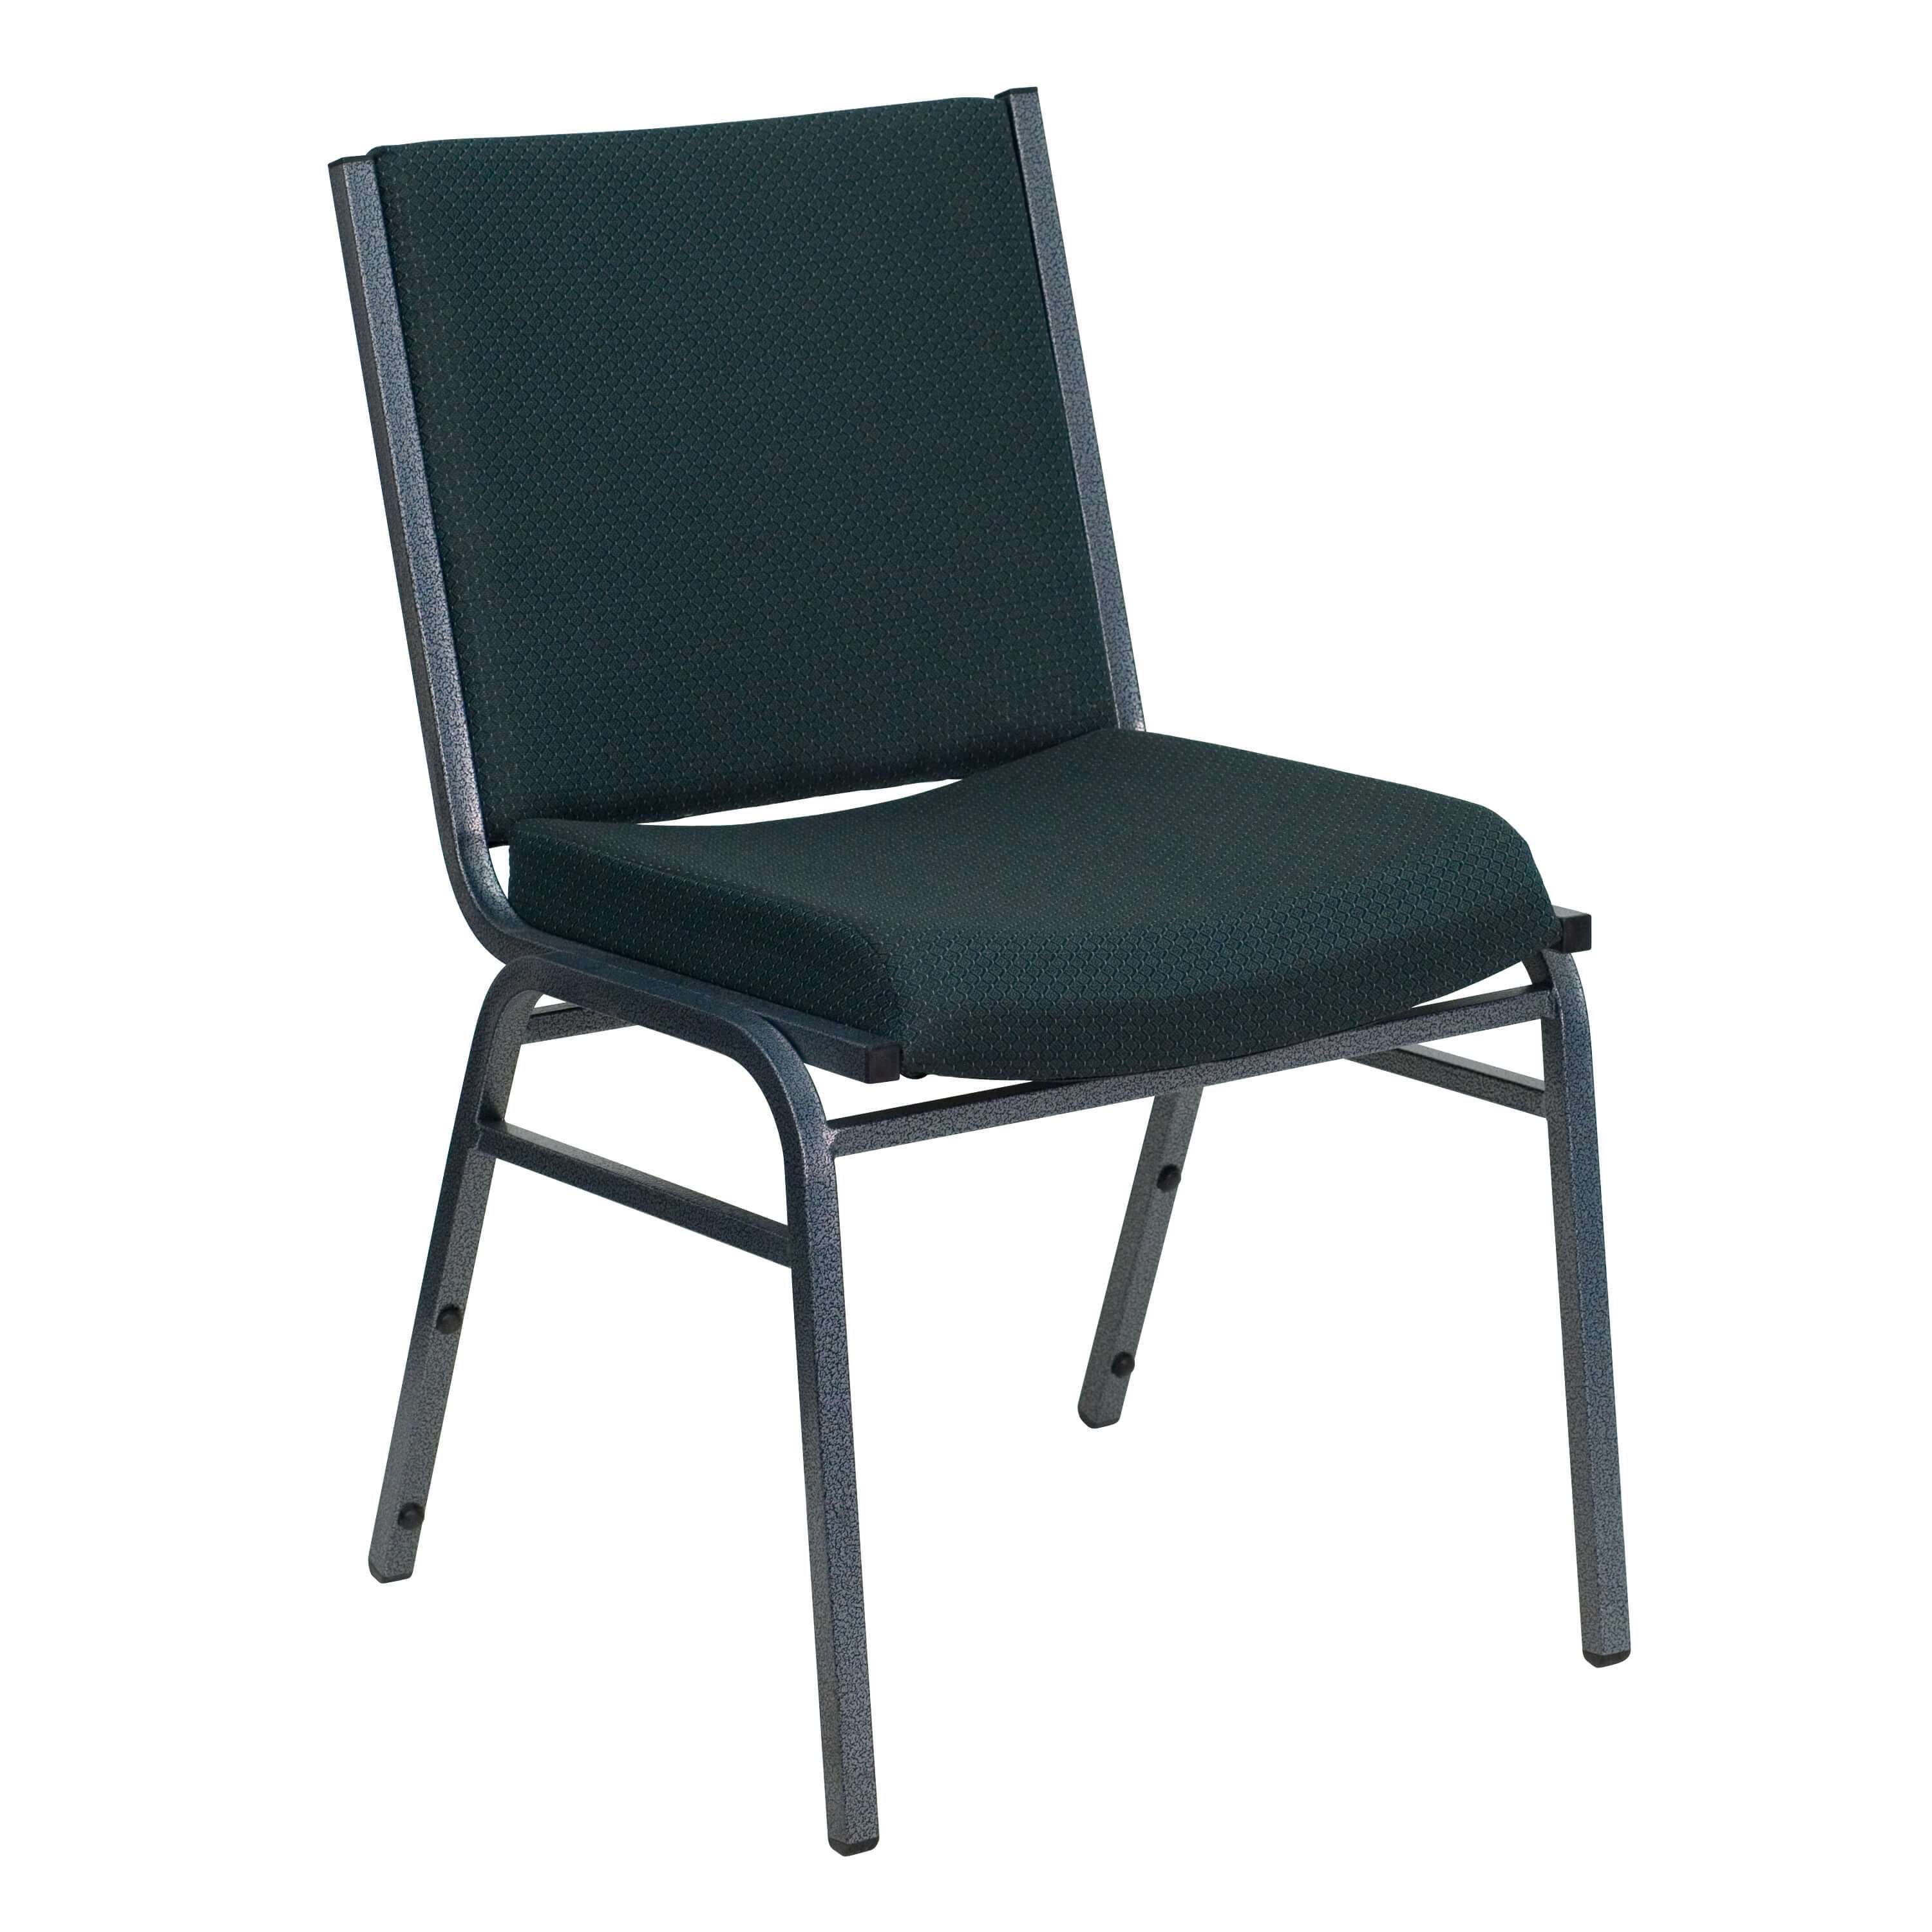 Stackable chairs CUB XU 60153 GN GG FLA